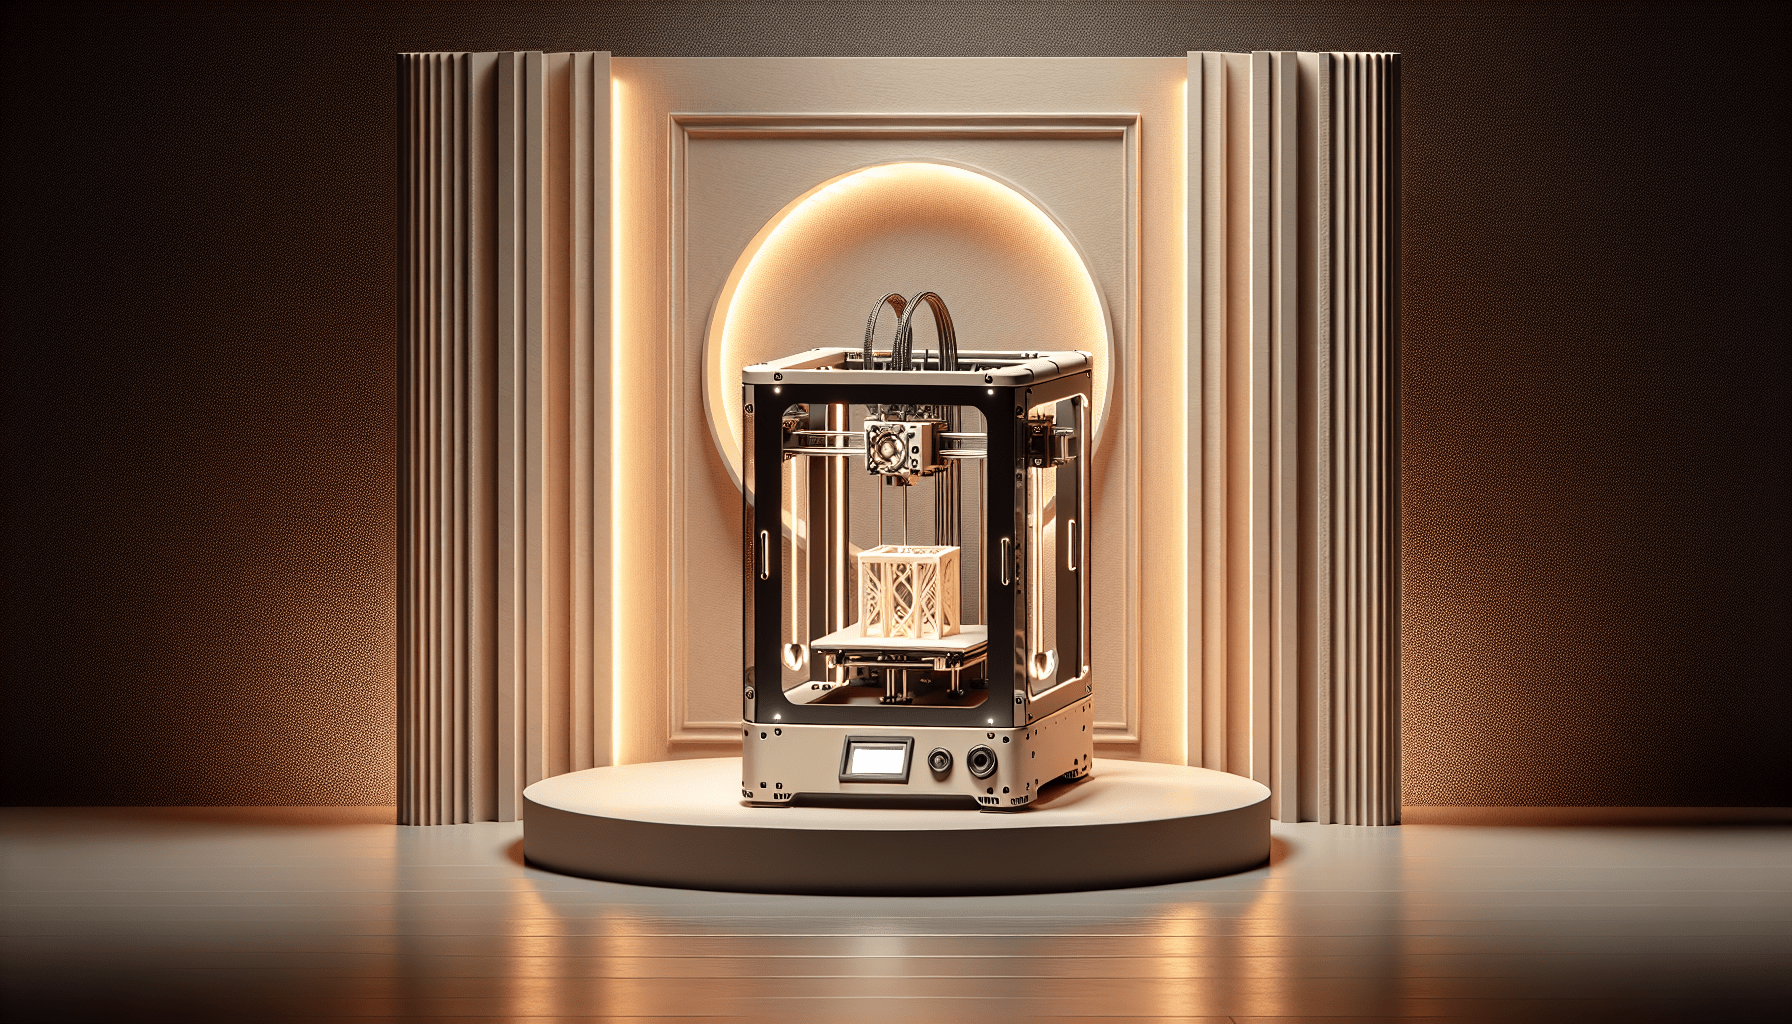 stratasys-to-unveil-new-j5-digital-anatomy-3d-printer-at-rapid-tct Stratasys to unveil new J5 Digital Anatomy 3D printer at RAPID + TCT